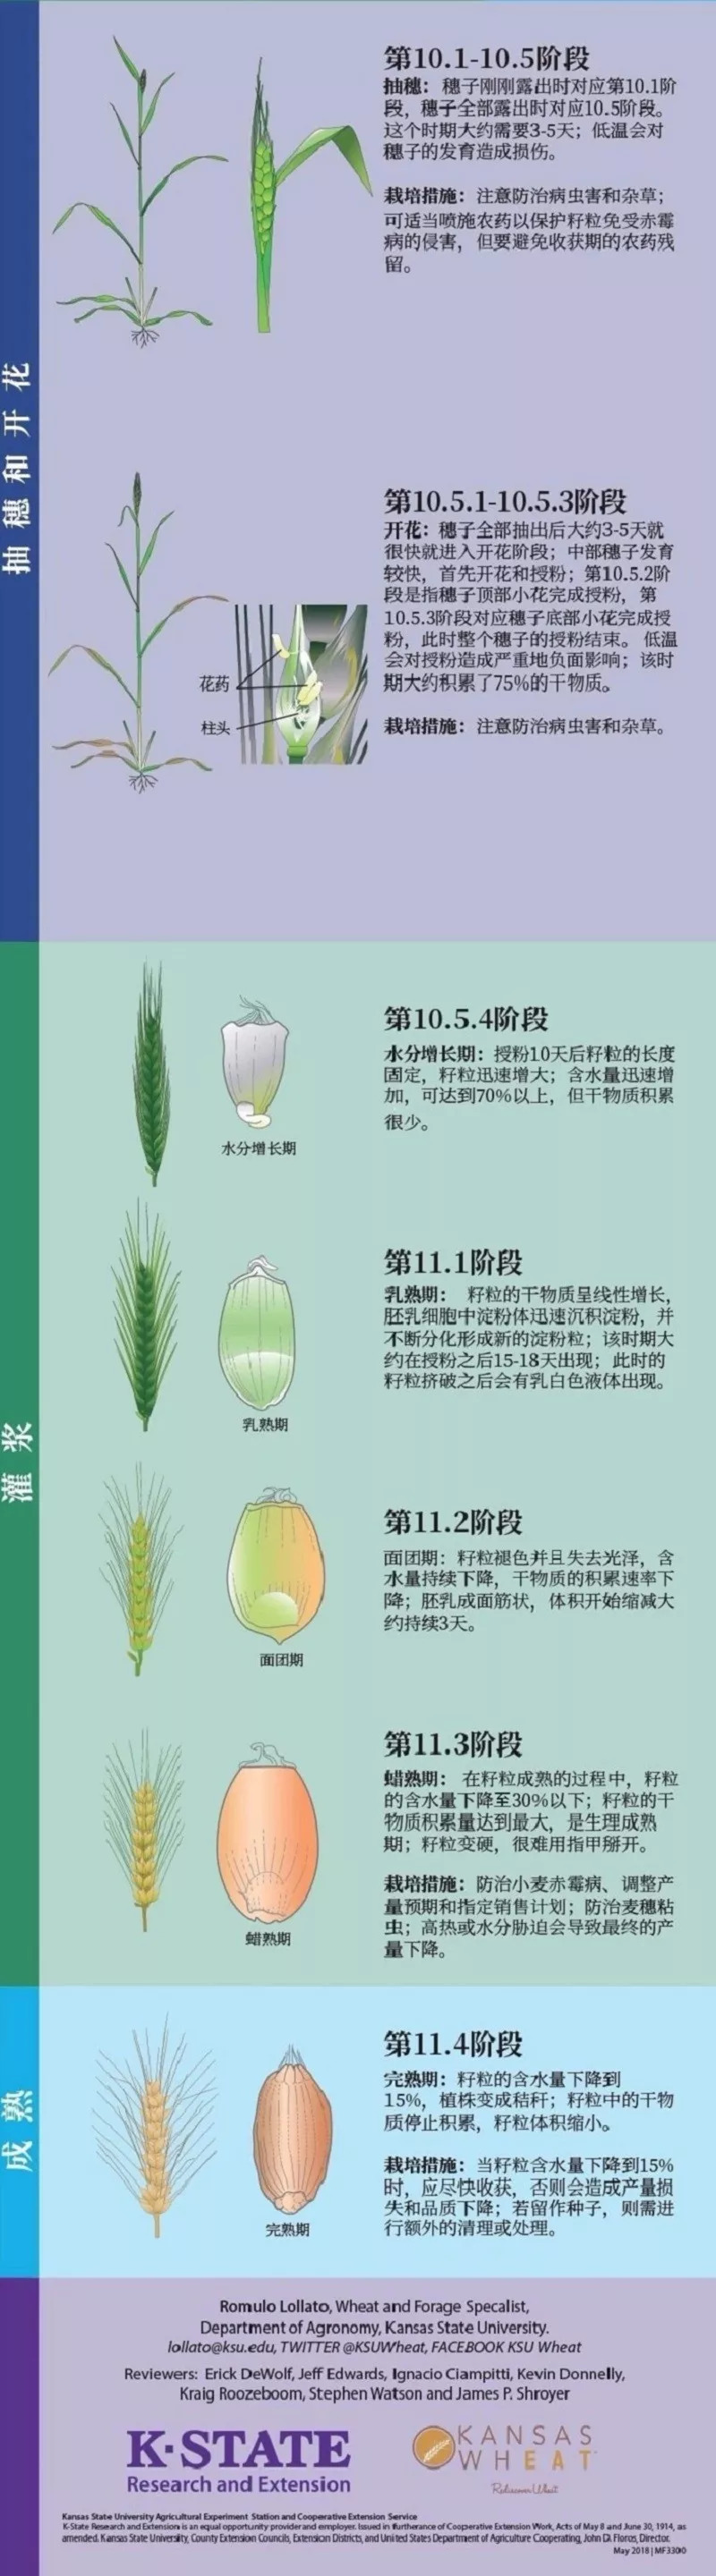 小麦的一生图解小麦从种子萌发到完熟